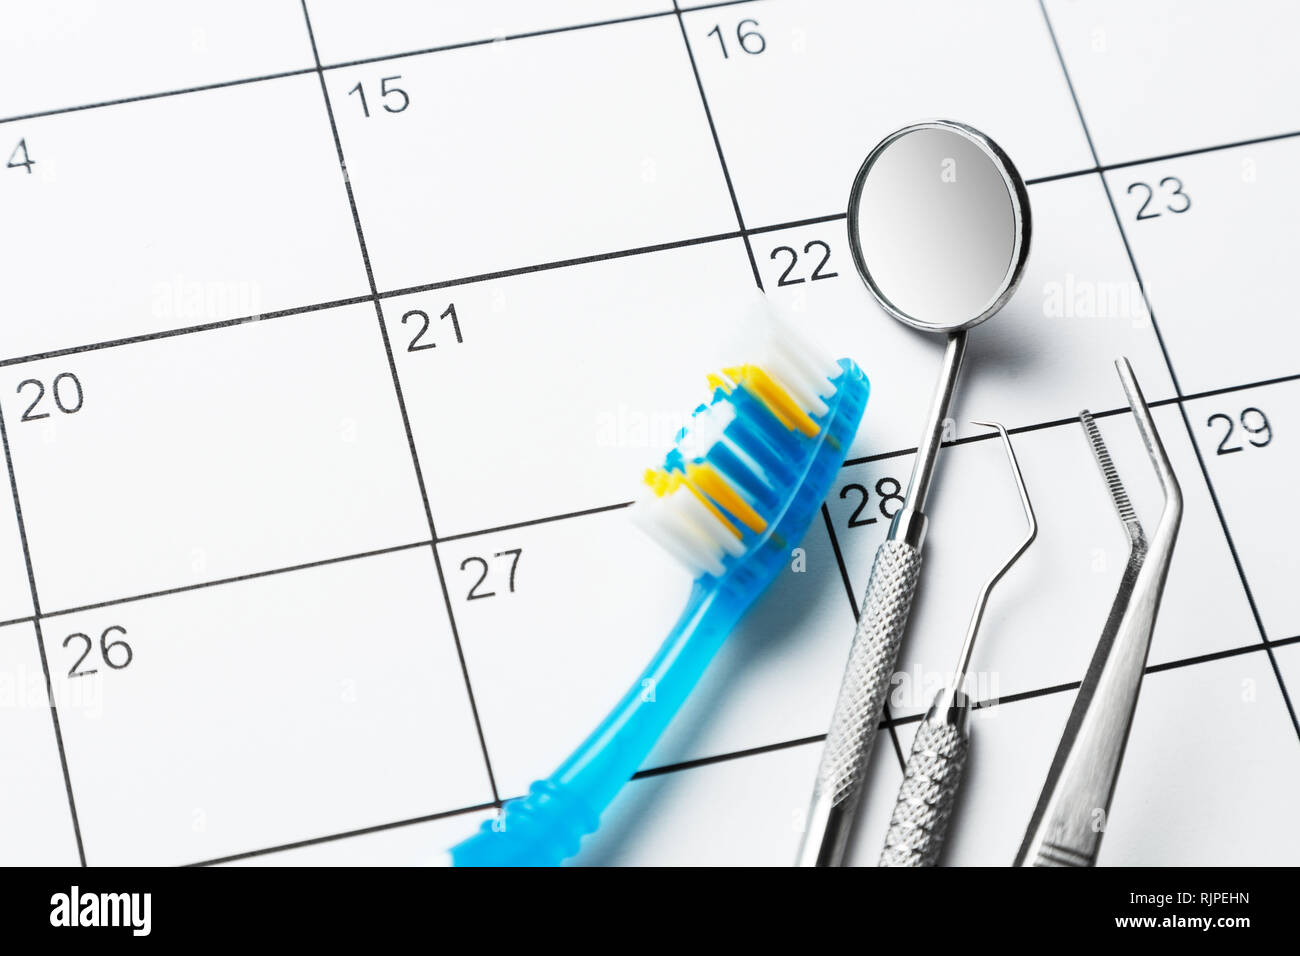 Zahnarzt Hinweis auf dem Kalender. Zahnbürste und eine zahnmedizinische Instrumente Spiegel, Prince, Haken auf dem Kalender. Stockfoto